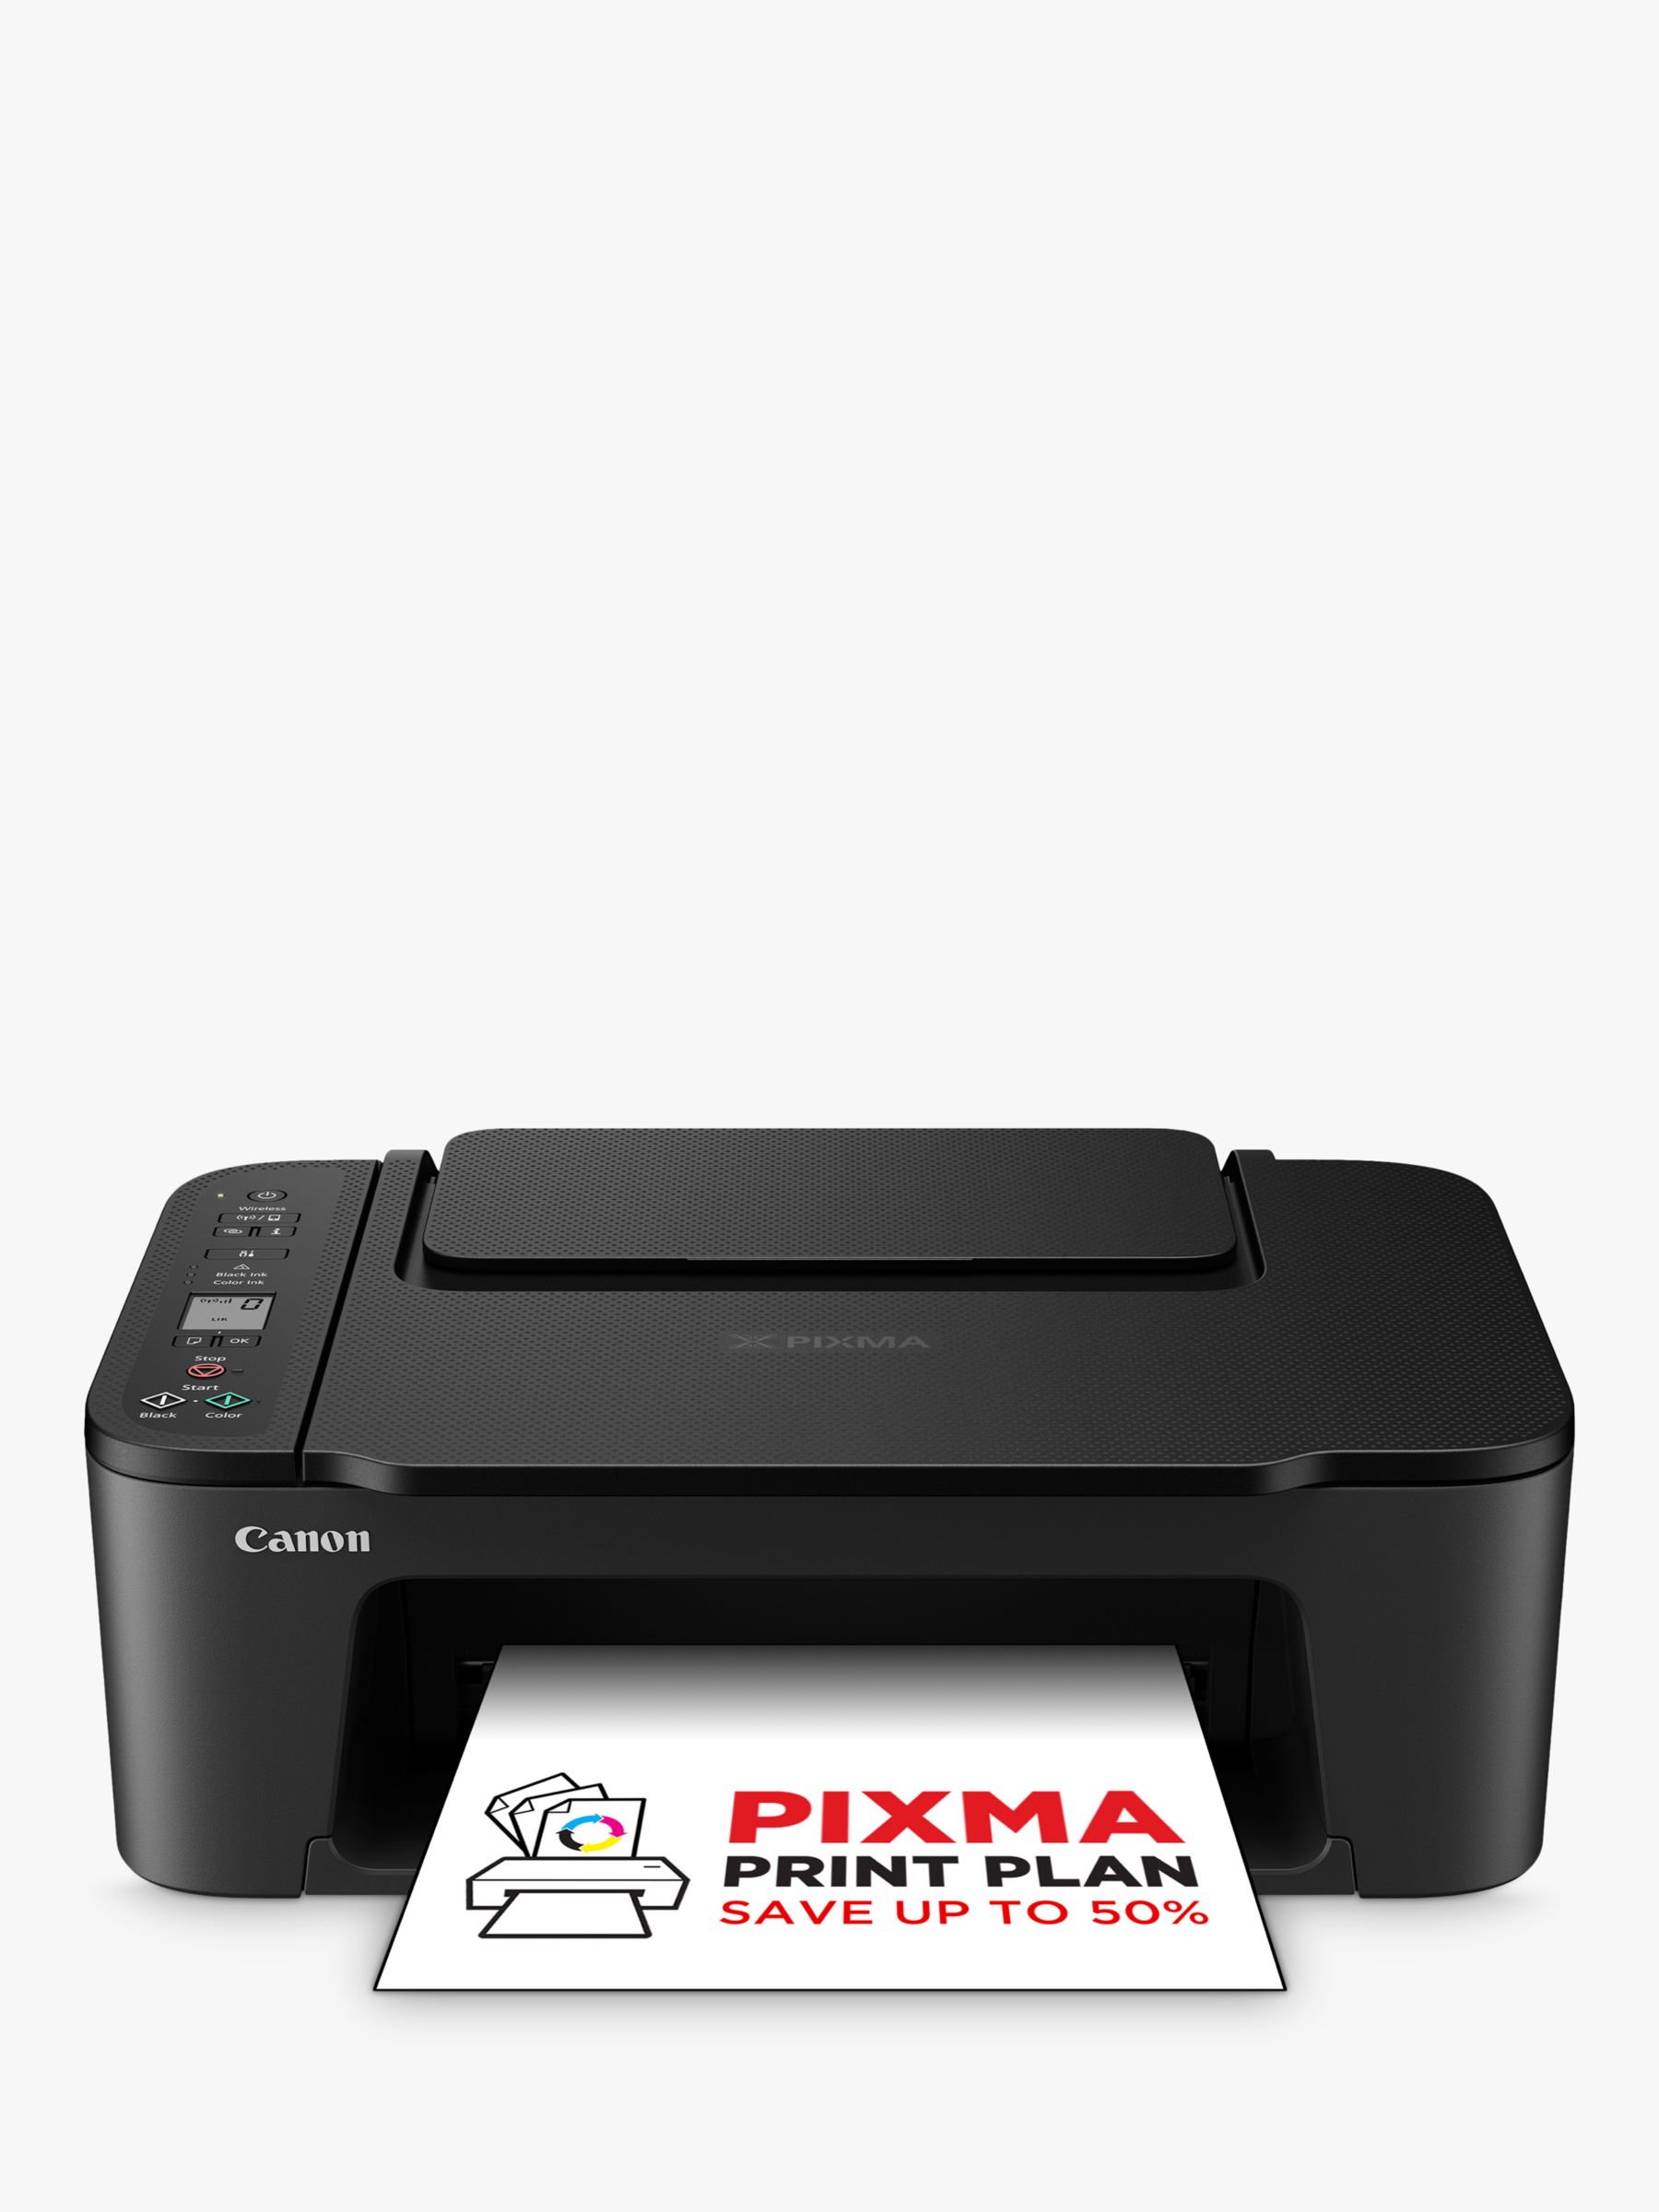 Canon PIXMA TS3550i All-in-One Wireless Printer, Black Wi-Fi